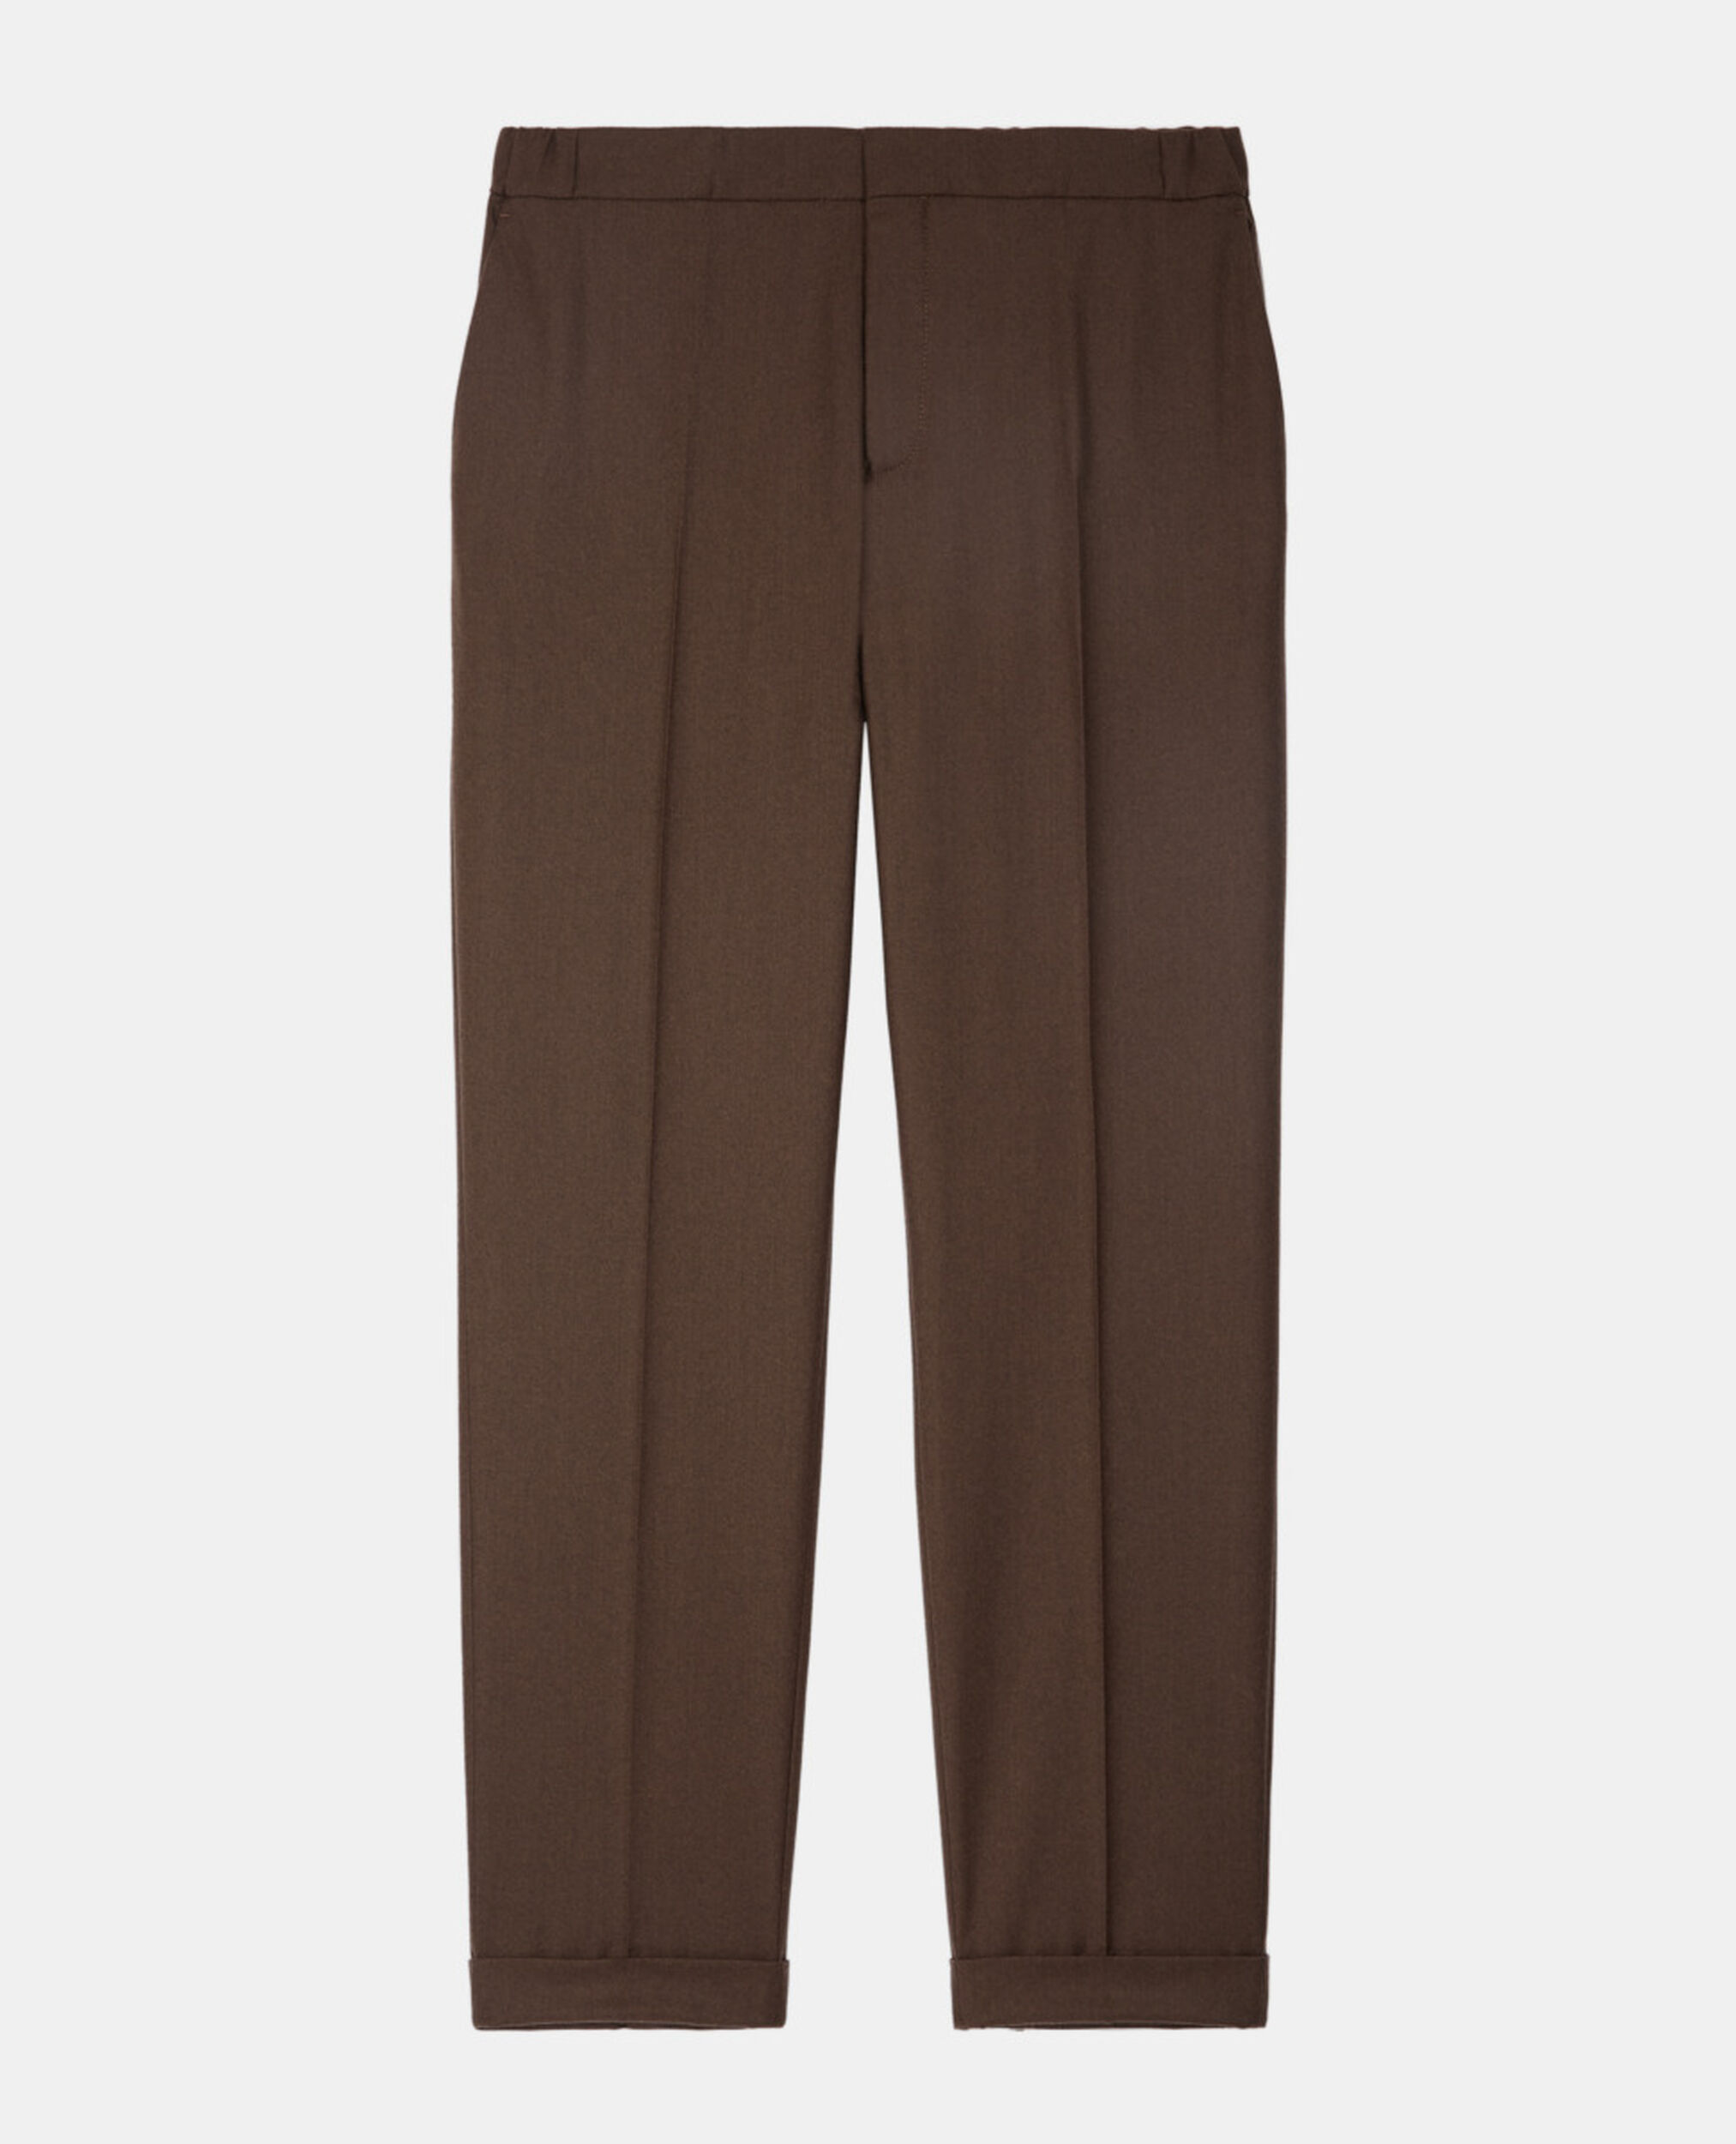 Pantalon en laine marron, BROWN, hi-res image number null